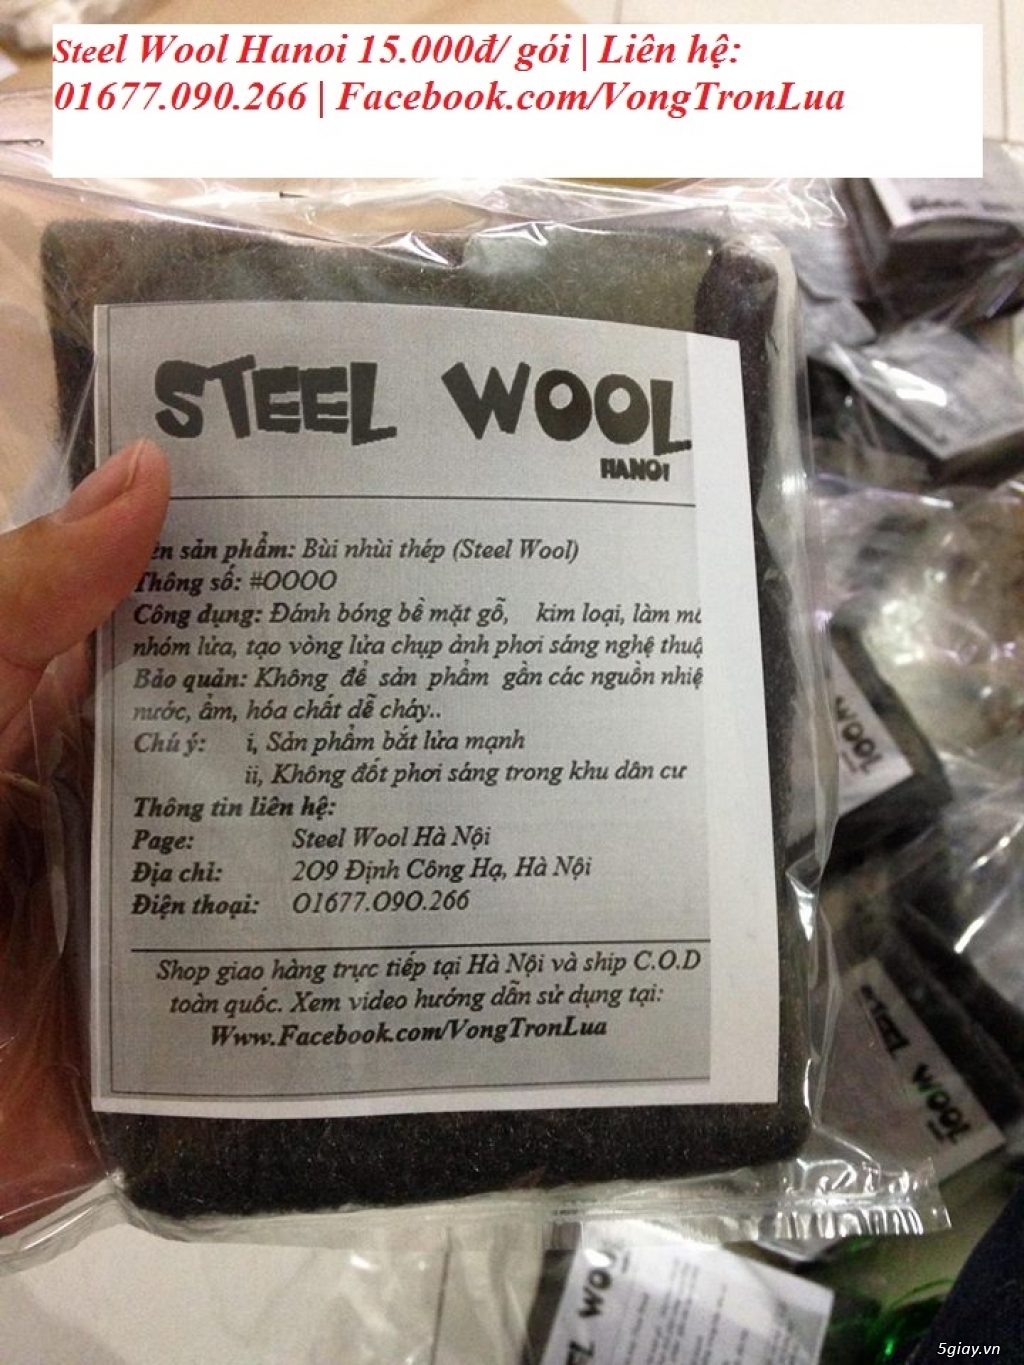 Mua bán Bùi Nhùi Thép, Steel Wool tại Hà Nội, ship toàn quốc - 2